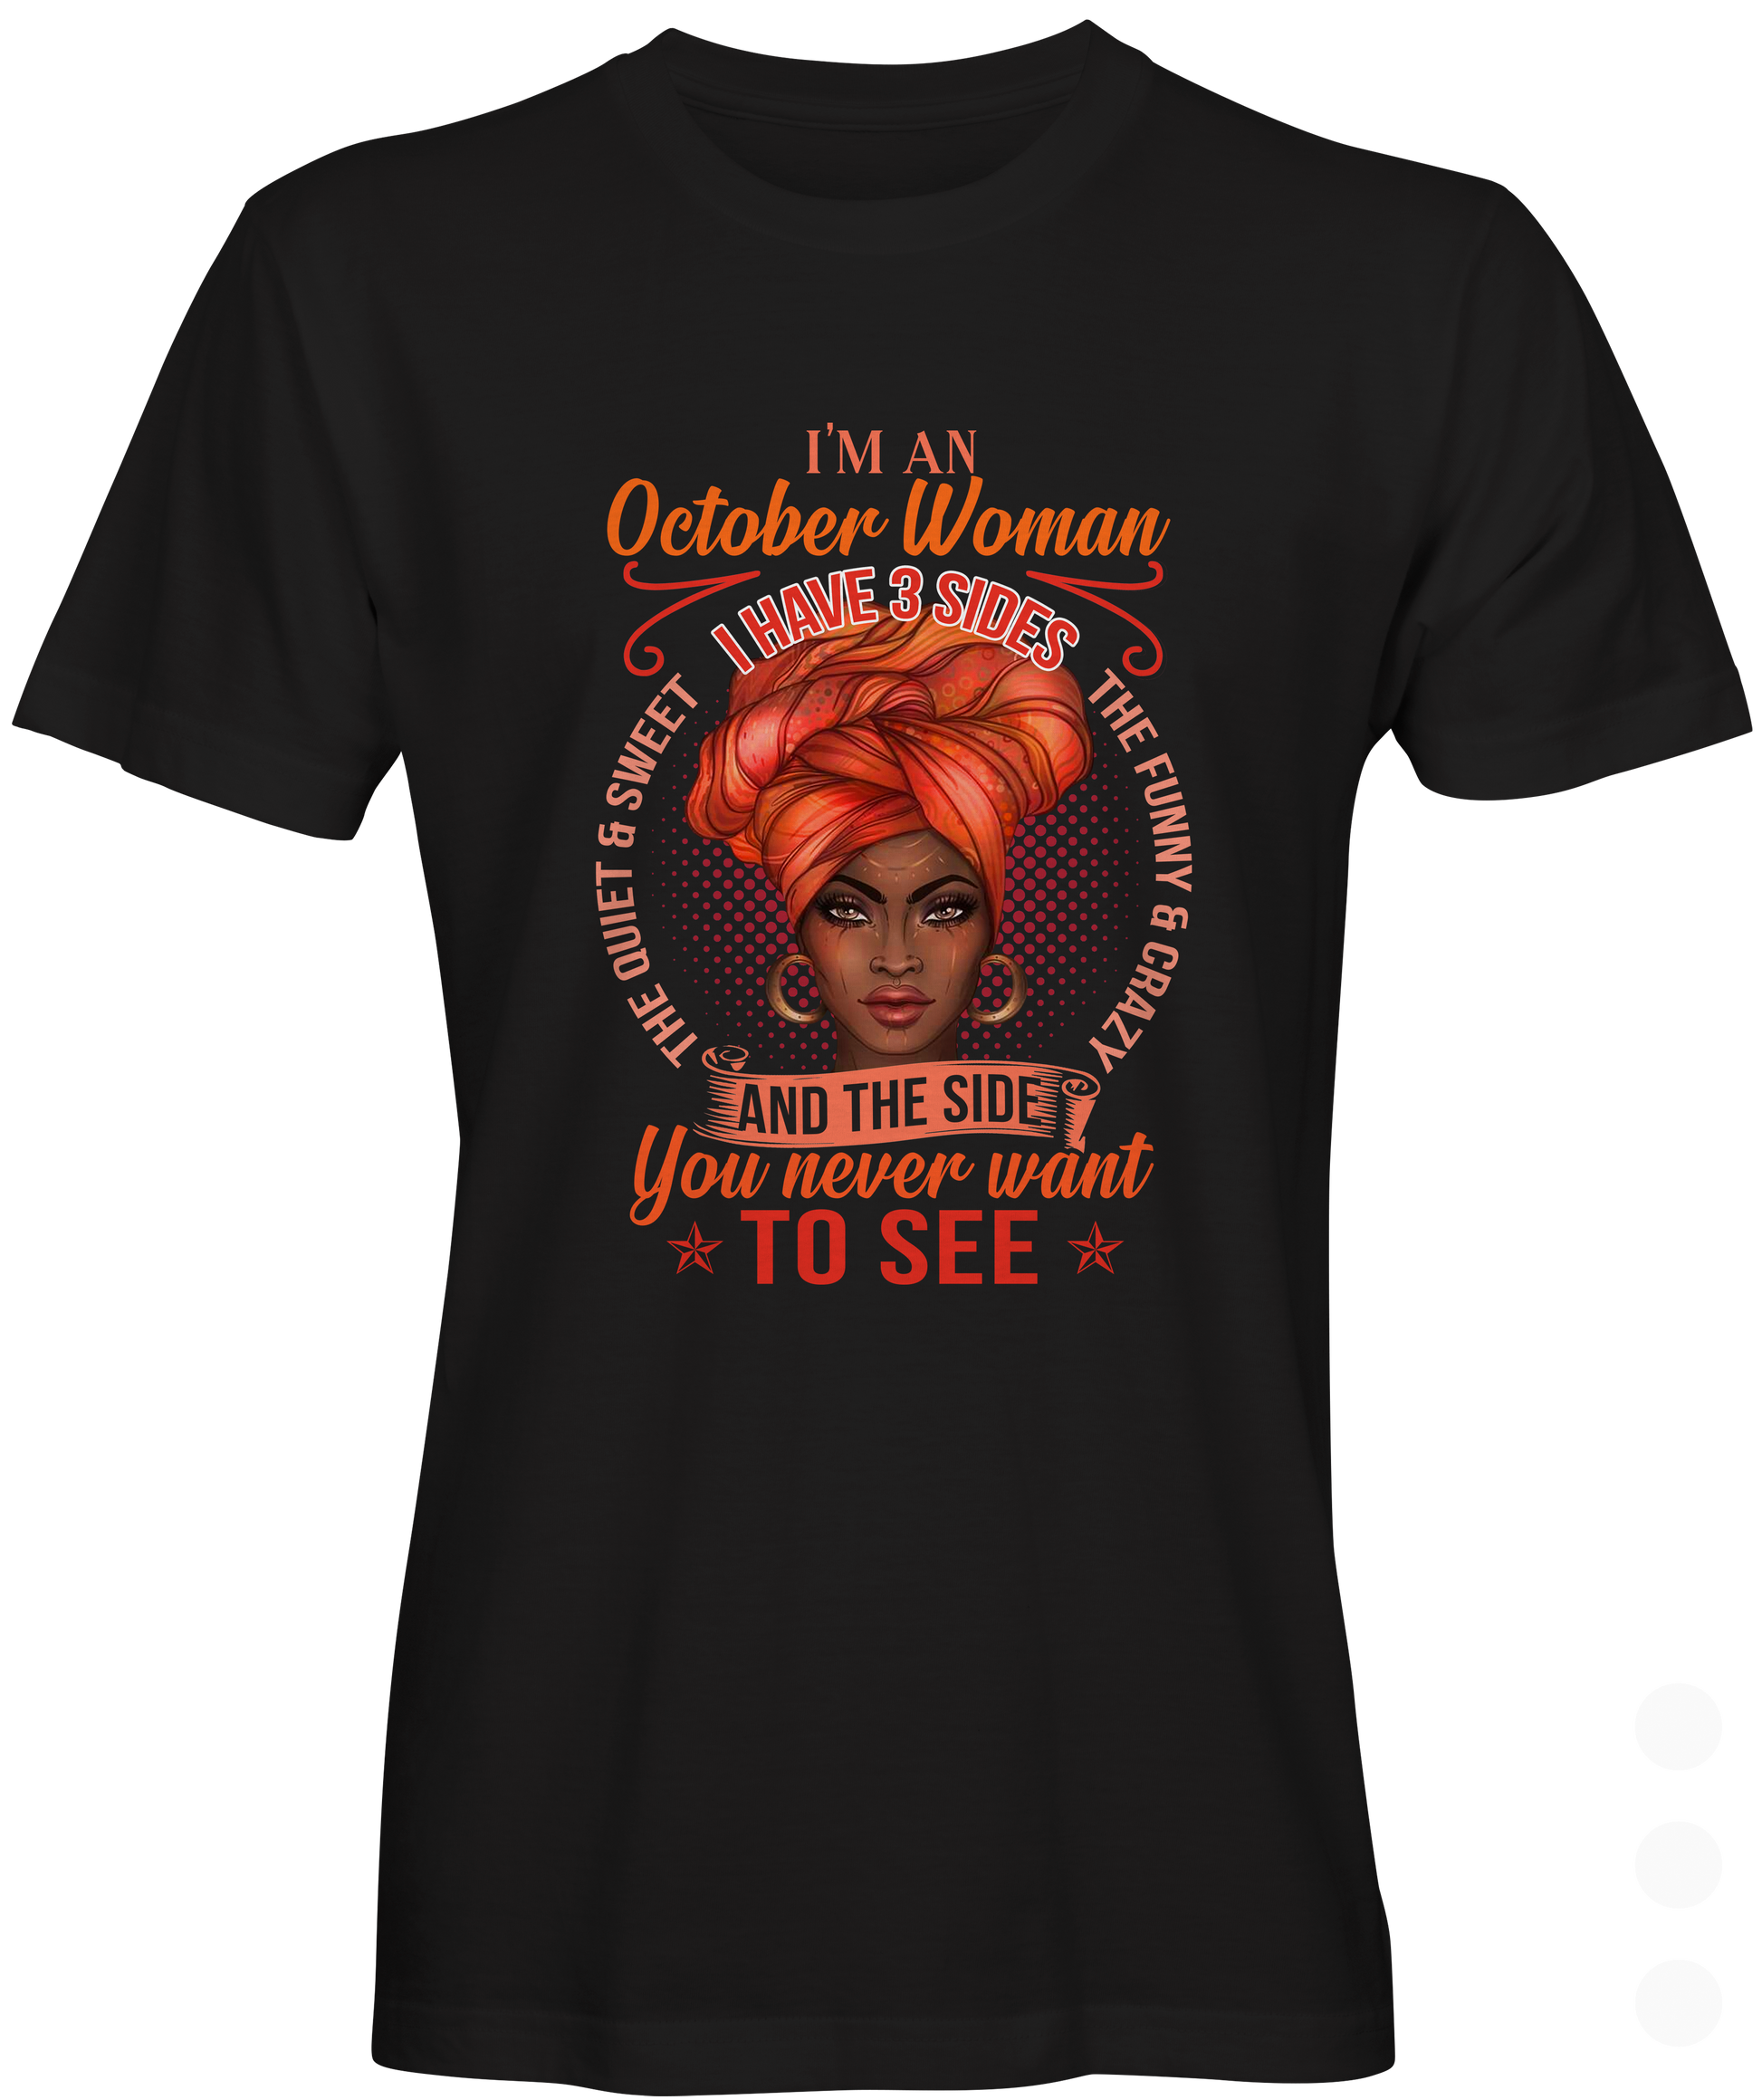  I Am An October Woman T-shirt